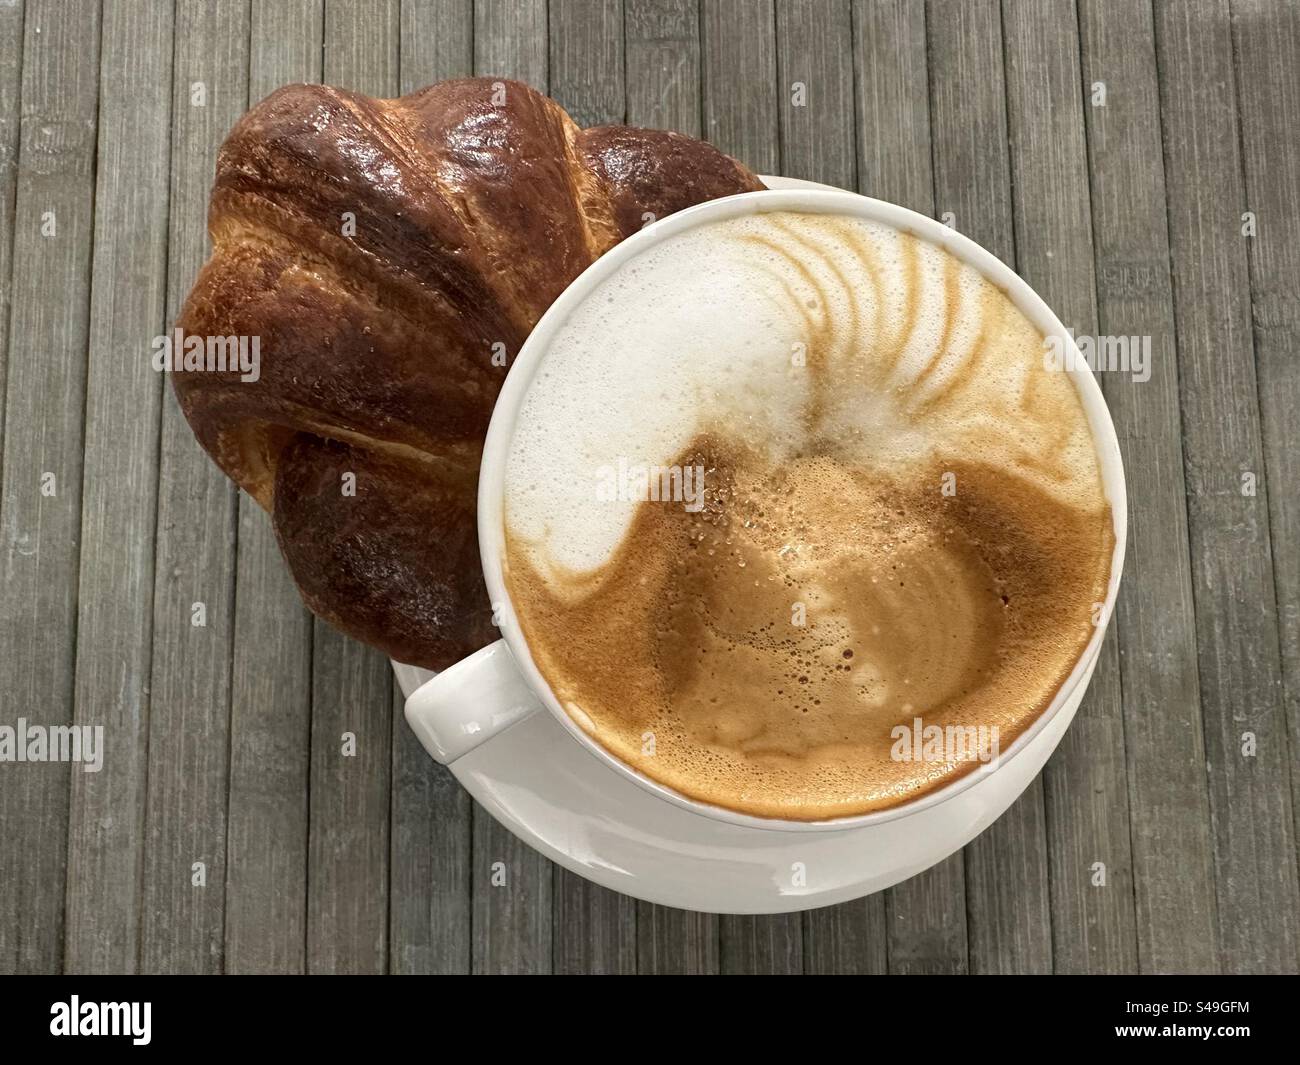 Classica colazione italiana per un dolce buongiorno al bar con croissant e cappuccino Foto Stock